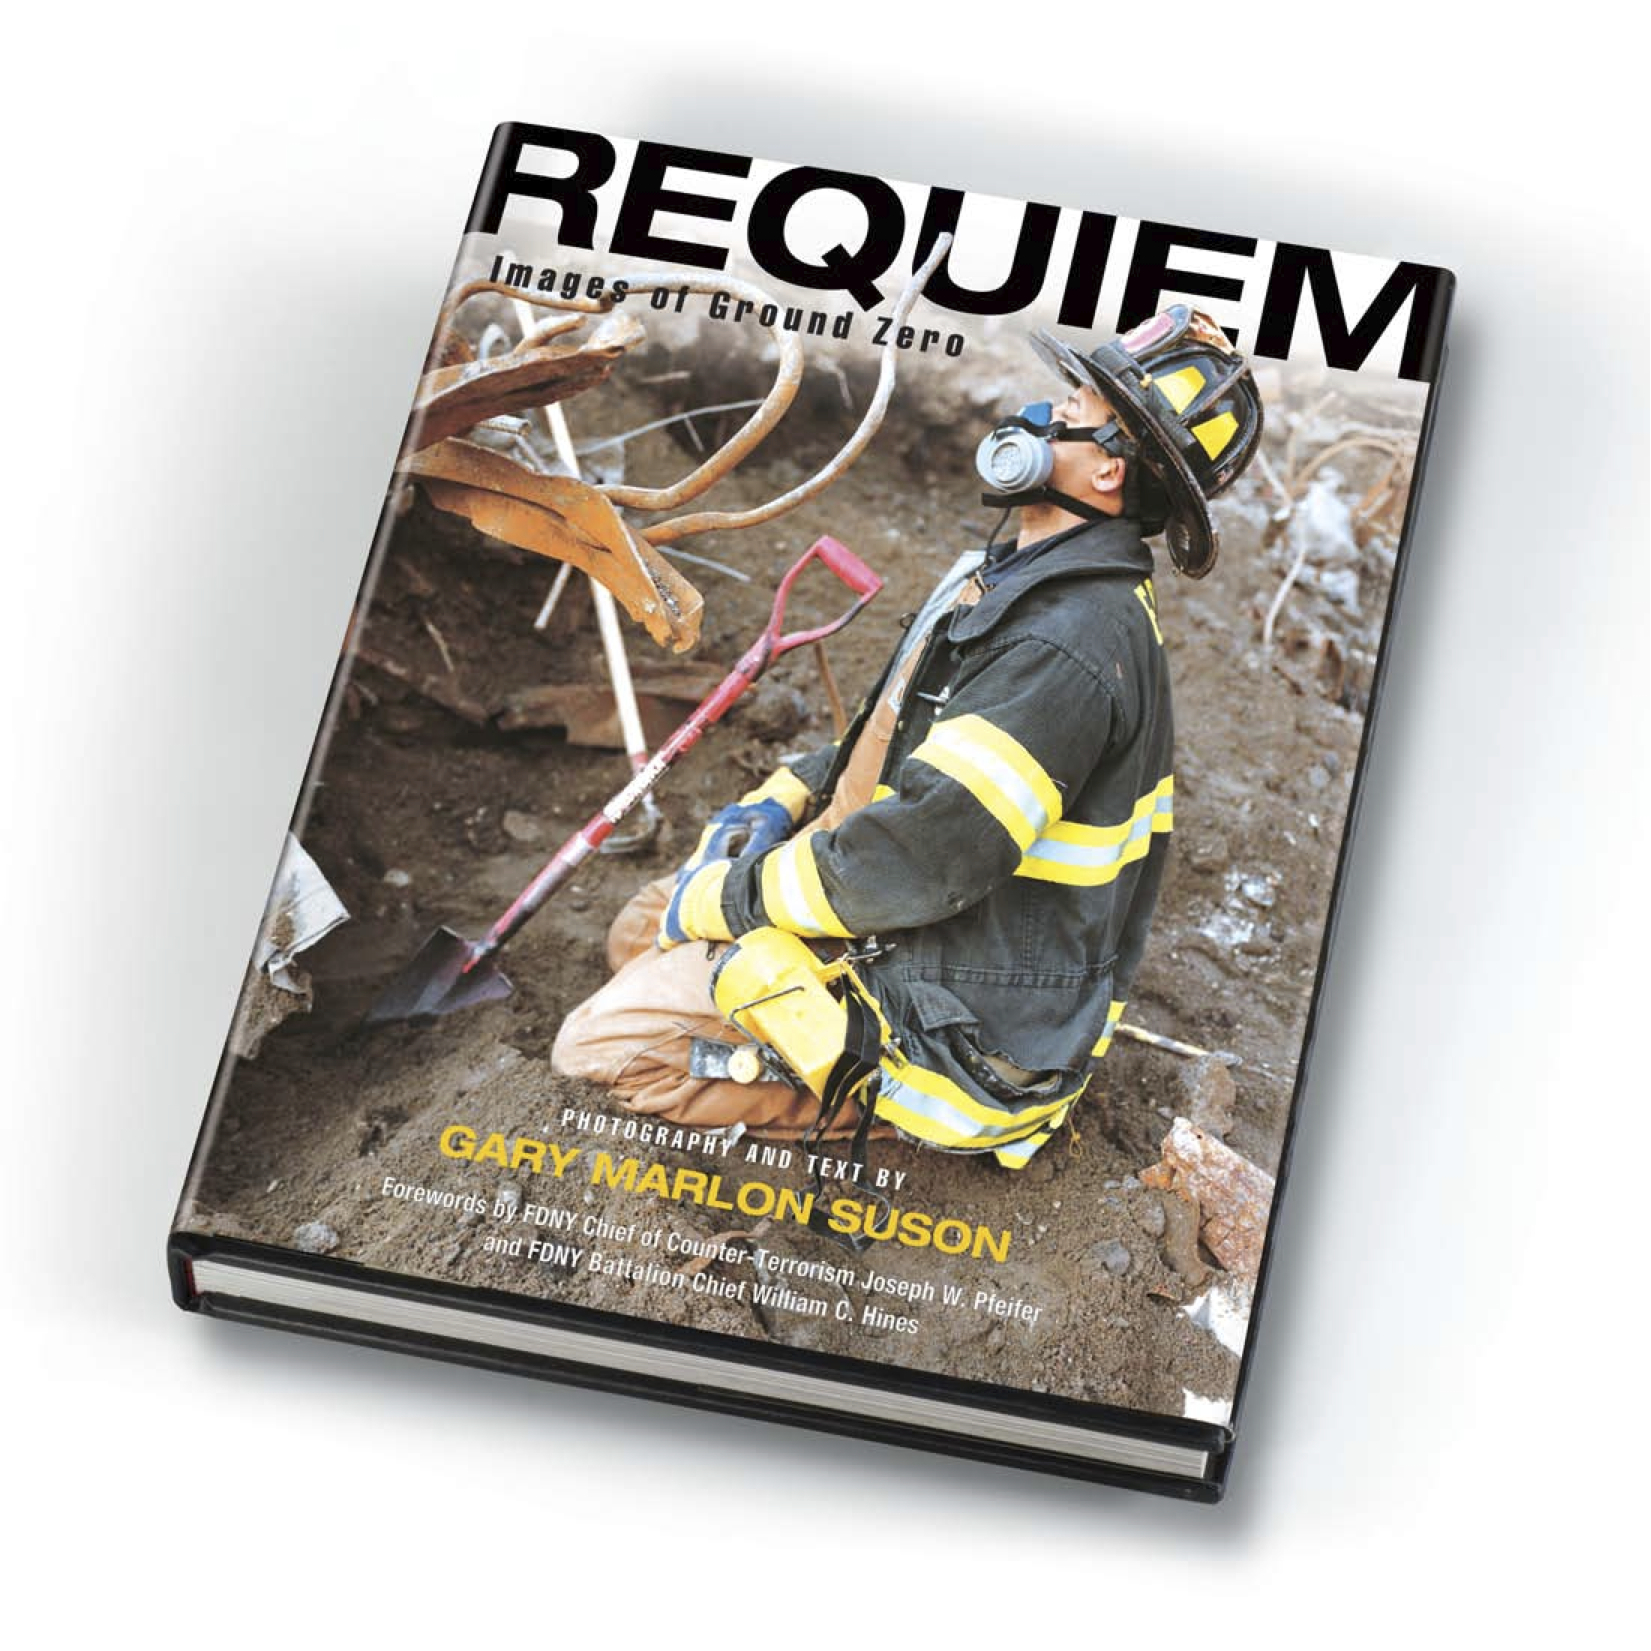 "Requeim: Images of Ground Zero"